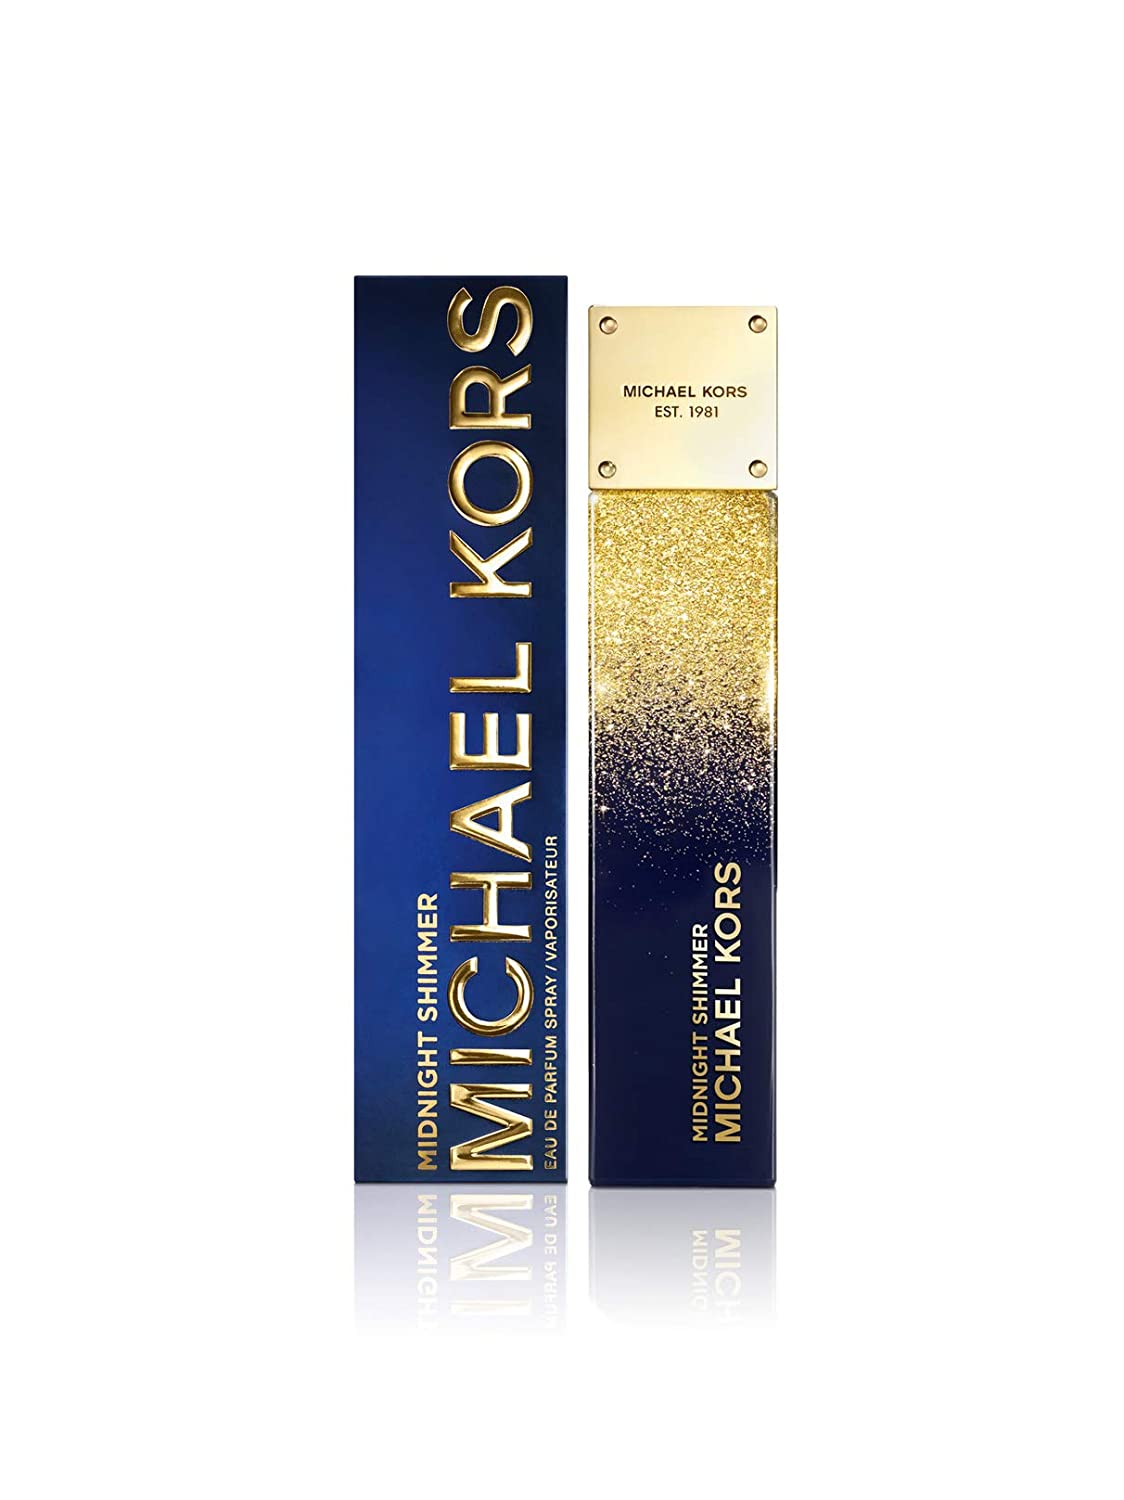 Michael Kors perfume for women - Midnight Shimmer Michael Kors for women